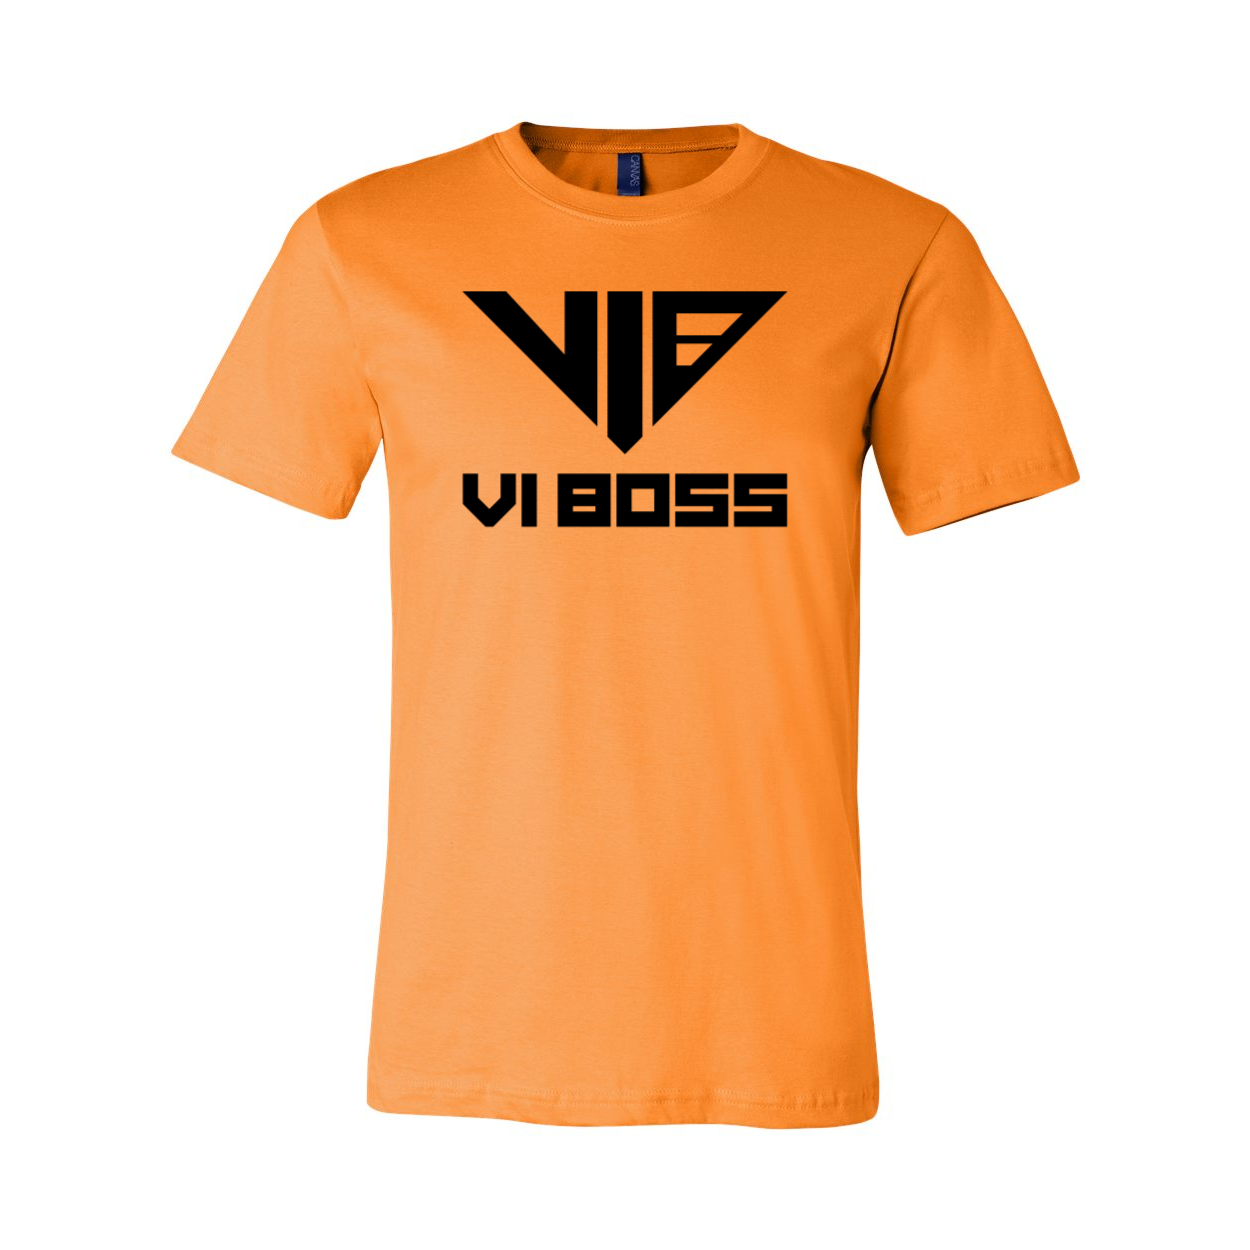 Unisex Short Sleeve Jersey Tee - XS / Orange - VI BOSS